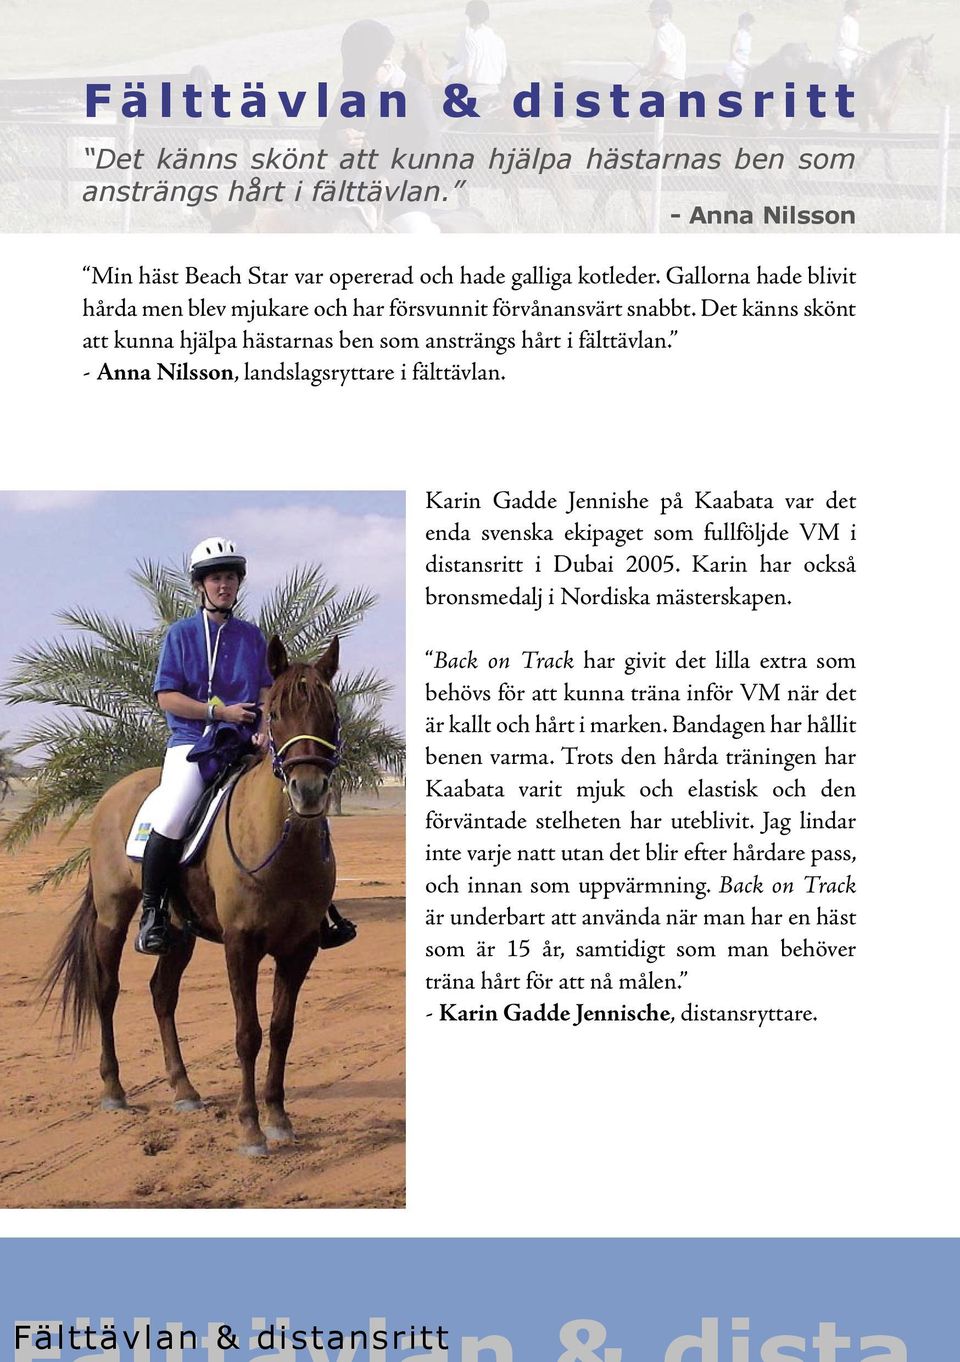 - Anna Nilsson, landslagsryttare i fälttävlan. Karin Gadde Jennishe på Kaabata var det enda svenska ekipaget som fullföljde VM i distansritt i Dubai 2005.